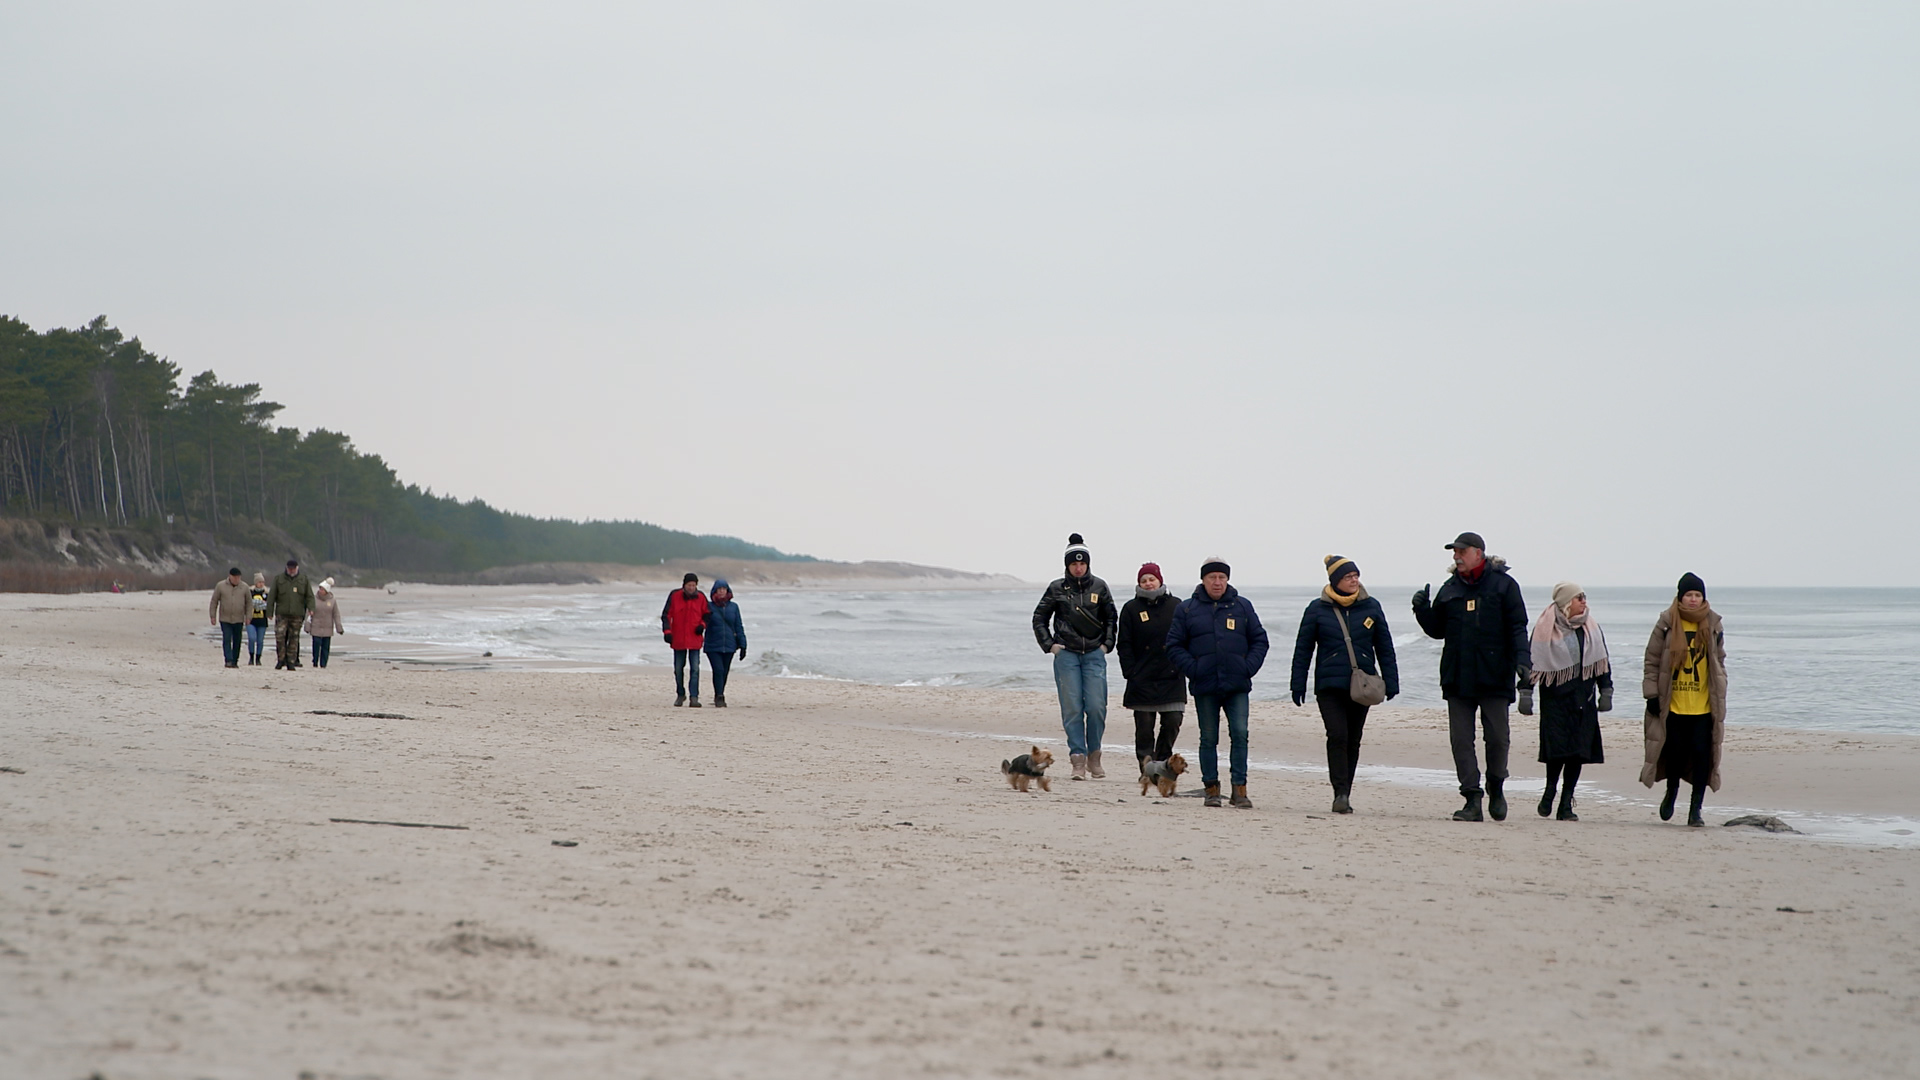 Mitglieder der Bürgerinitiative "Ostsee-SOS" gehen über einen Strand bei Choszewo (Polen). | Kristin Joachim